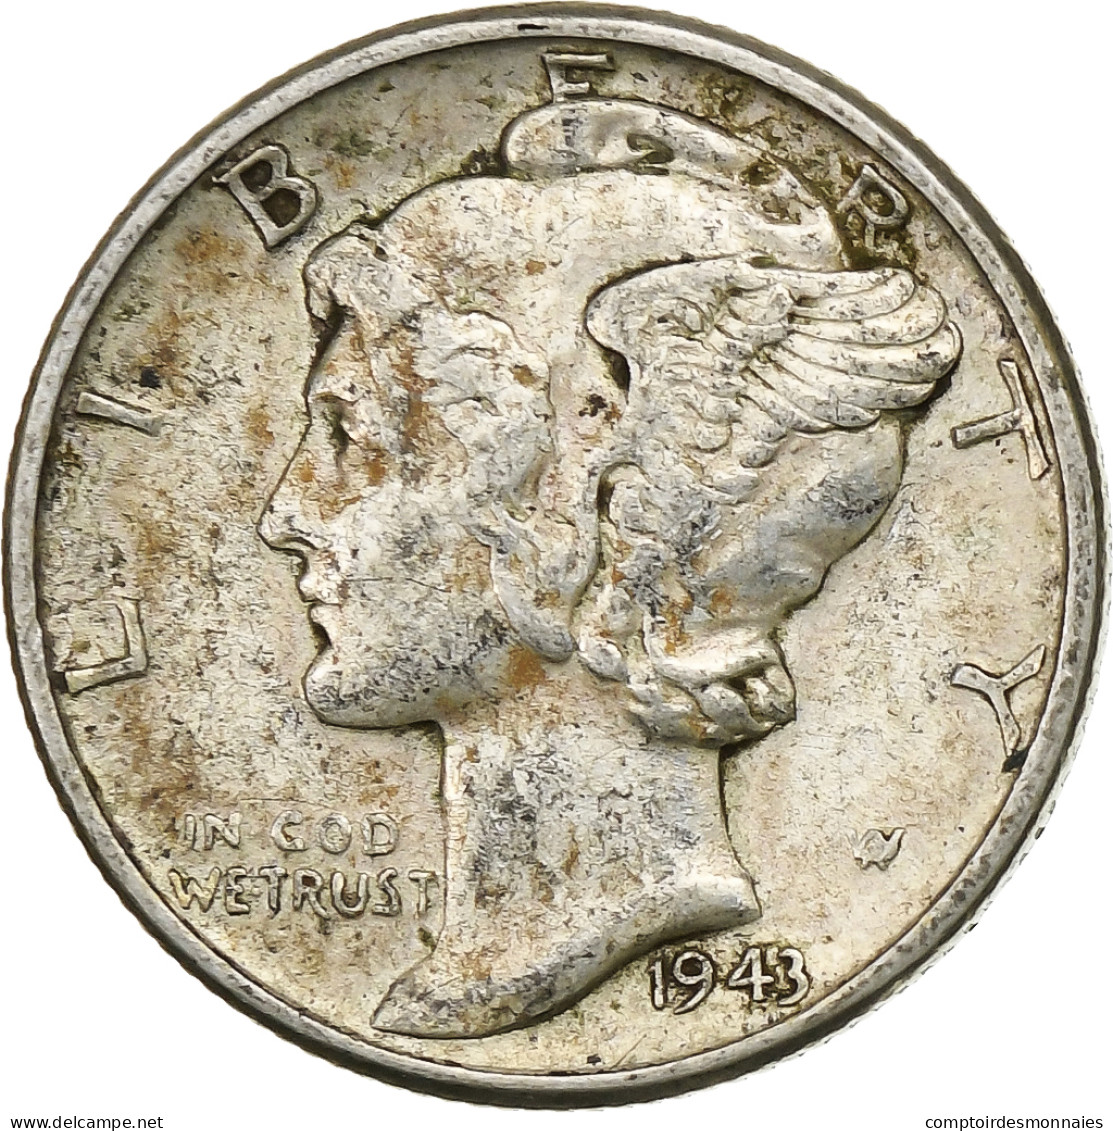 États-Unis, Dime, Mercury Dime, 1943, U.S. Mint, Argent, TTB, KM:140 - 1916-1945: Mercury (kwik)